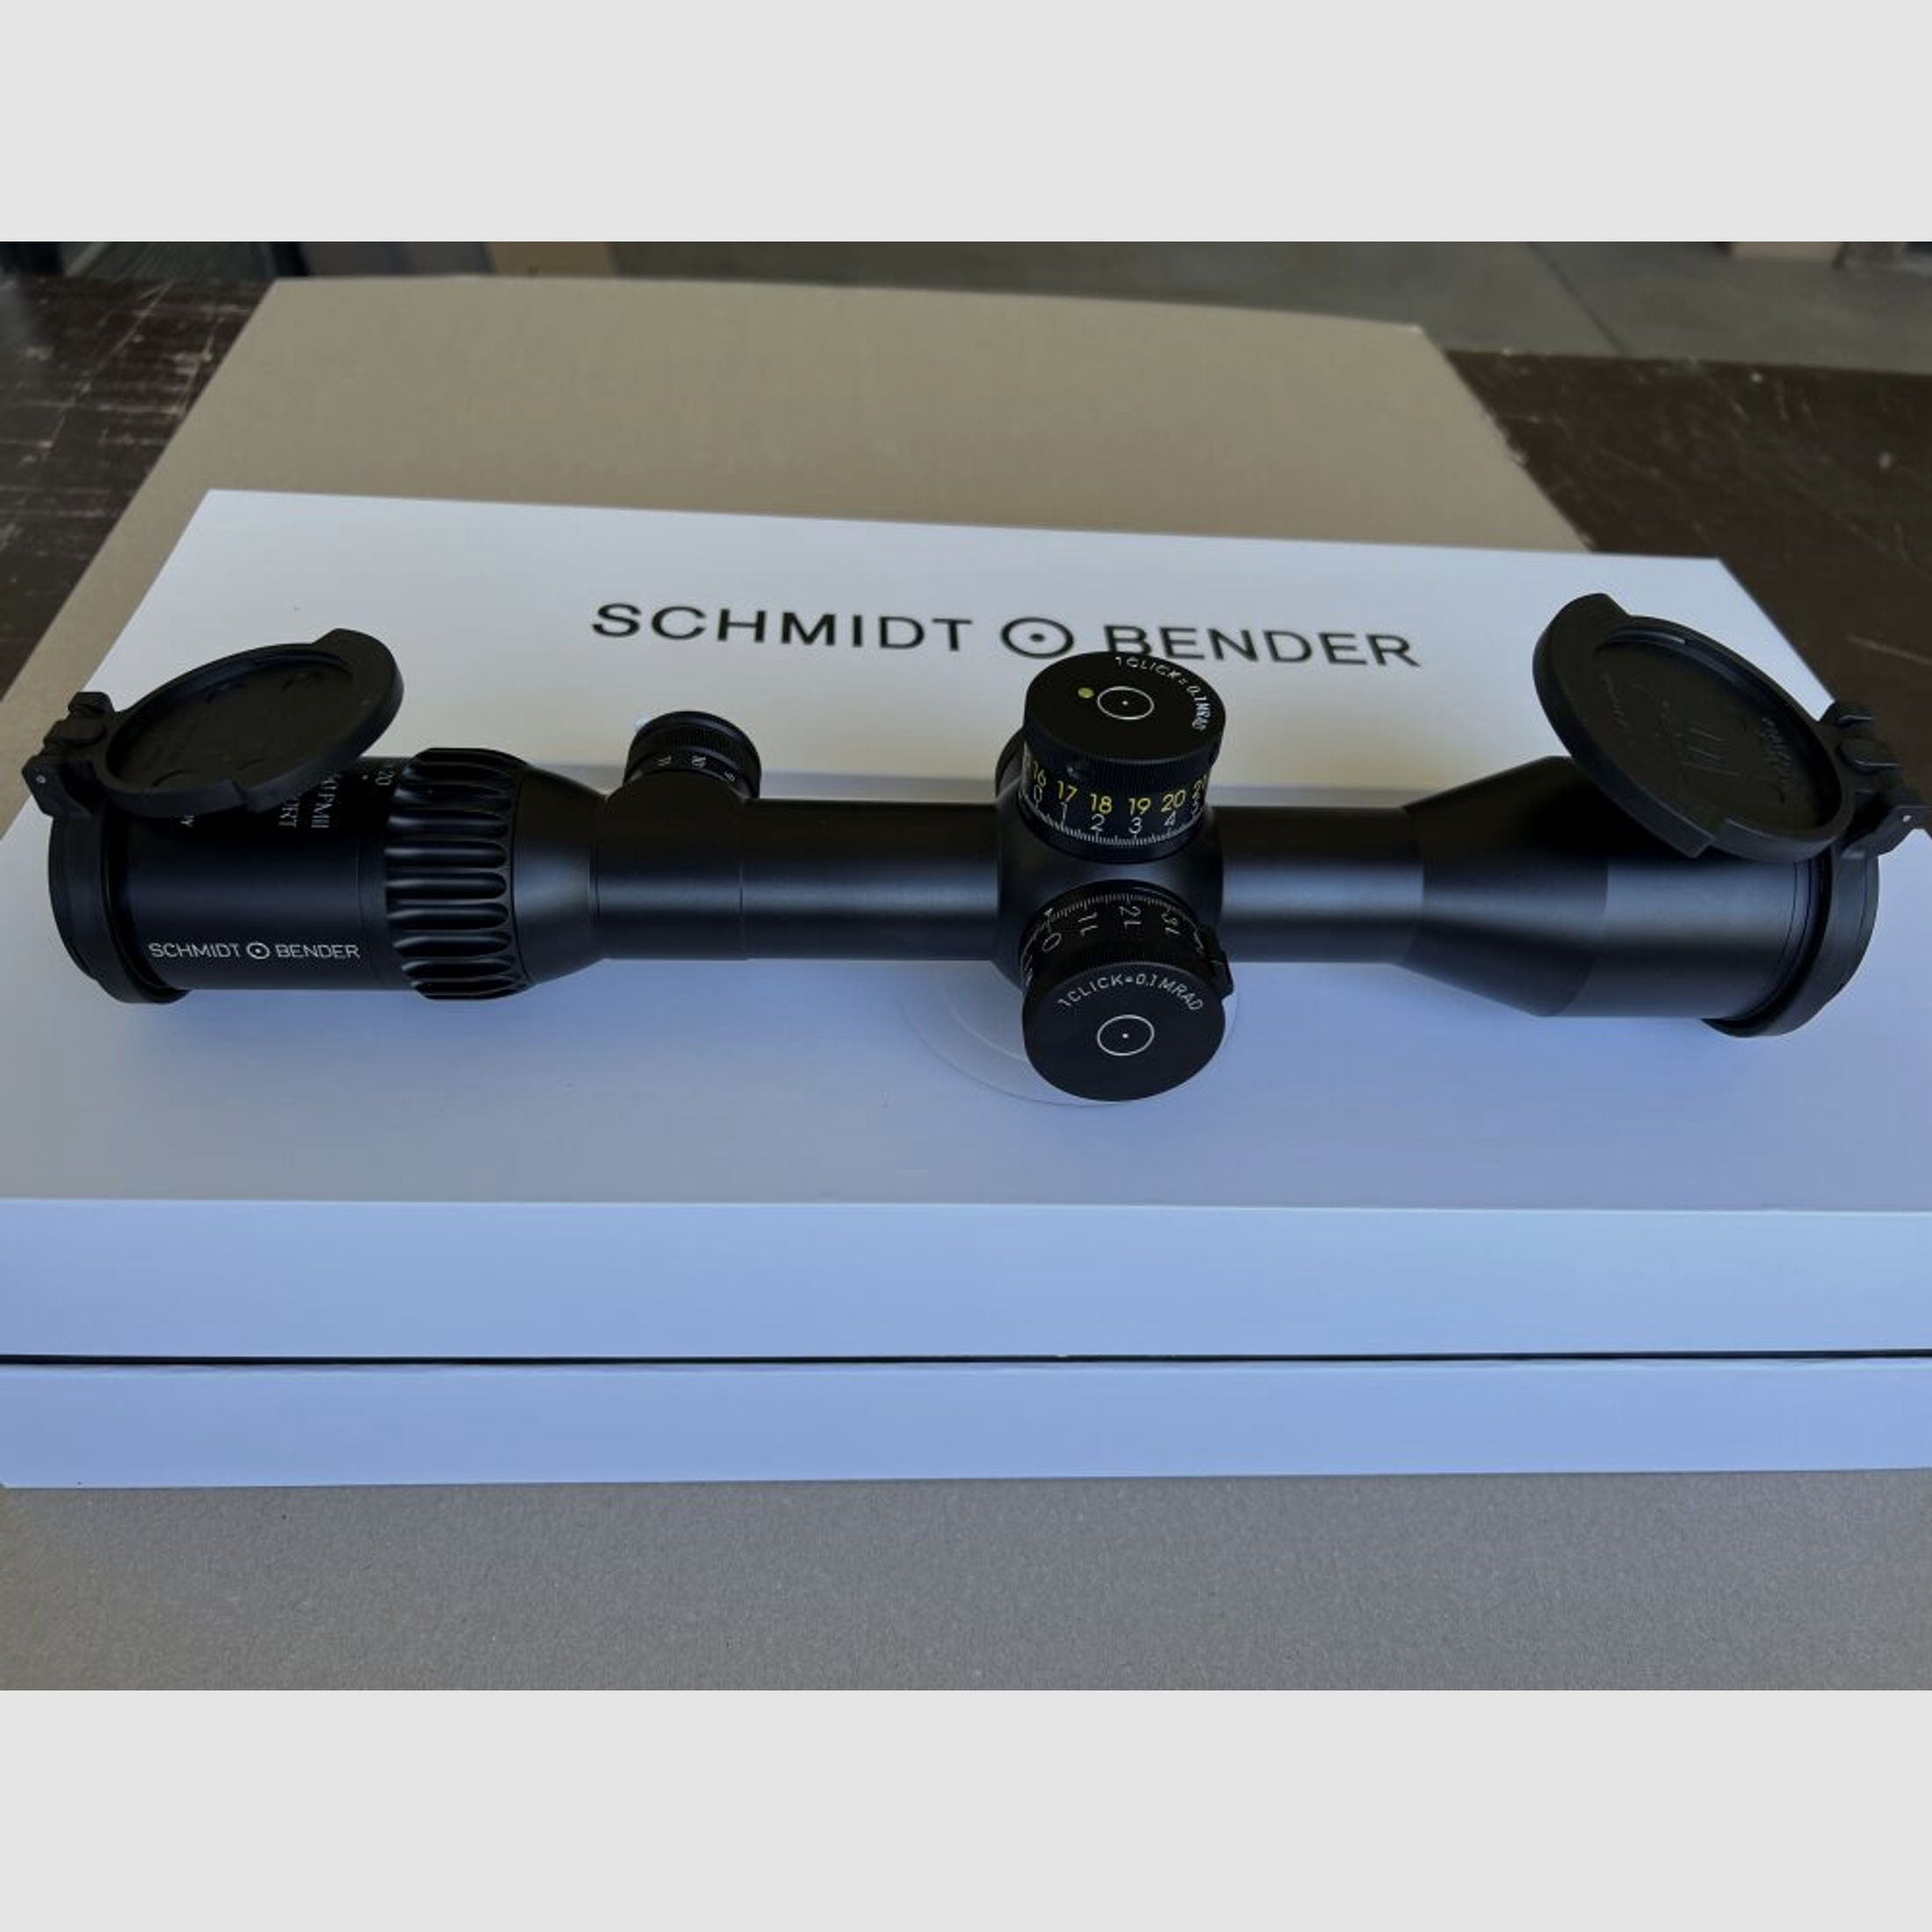 Schmidt & Bender	 Schmidt & Bender 3-20x50 PM II Ultra Short LP MSR2 1 cm cw DT II+ MTC LT 667-911-822-M3-I6